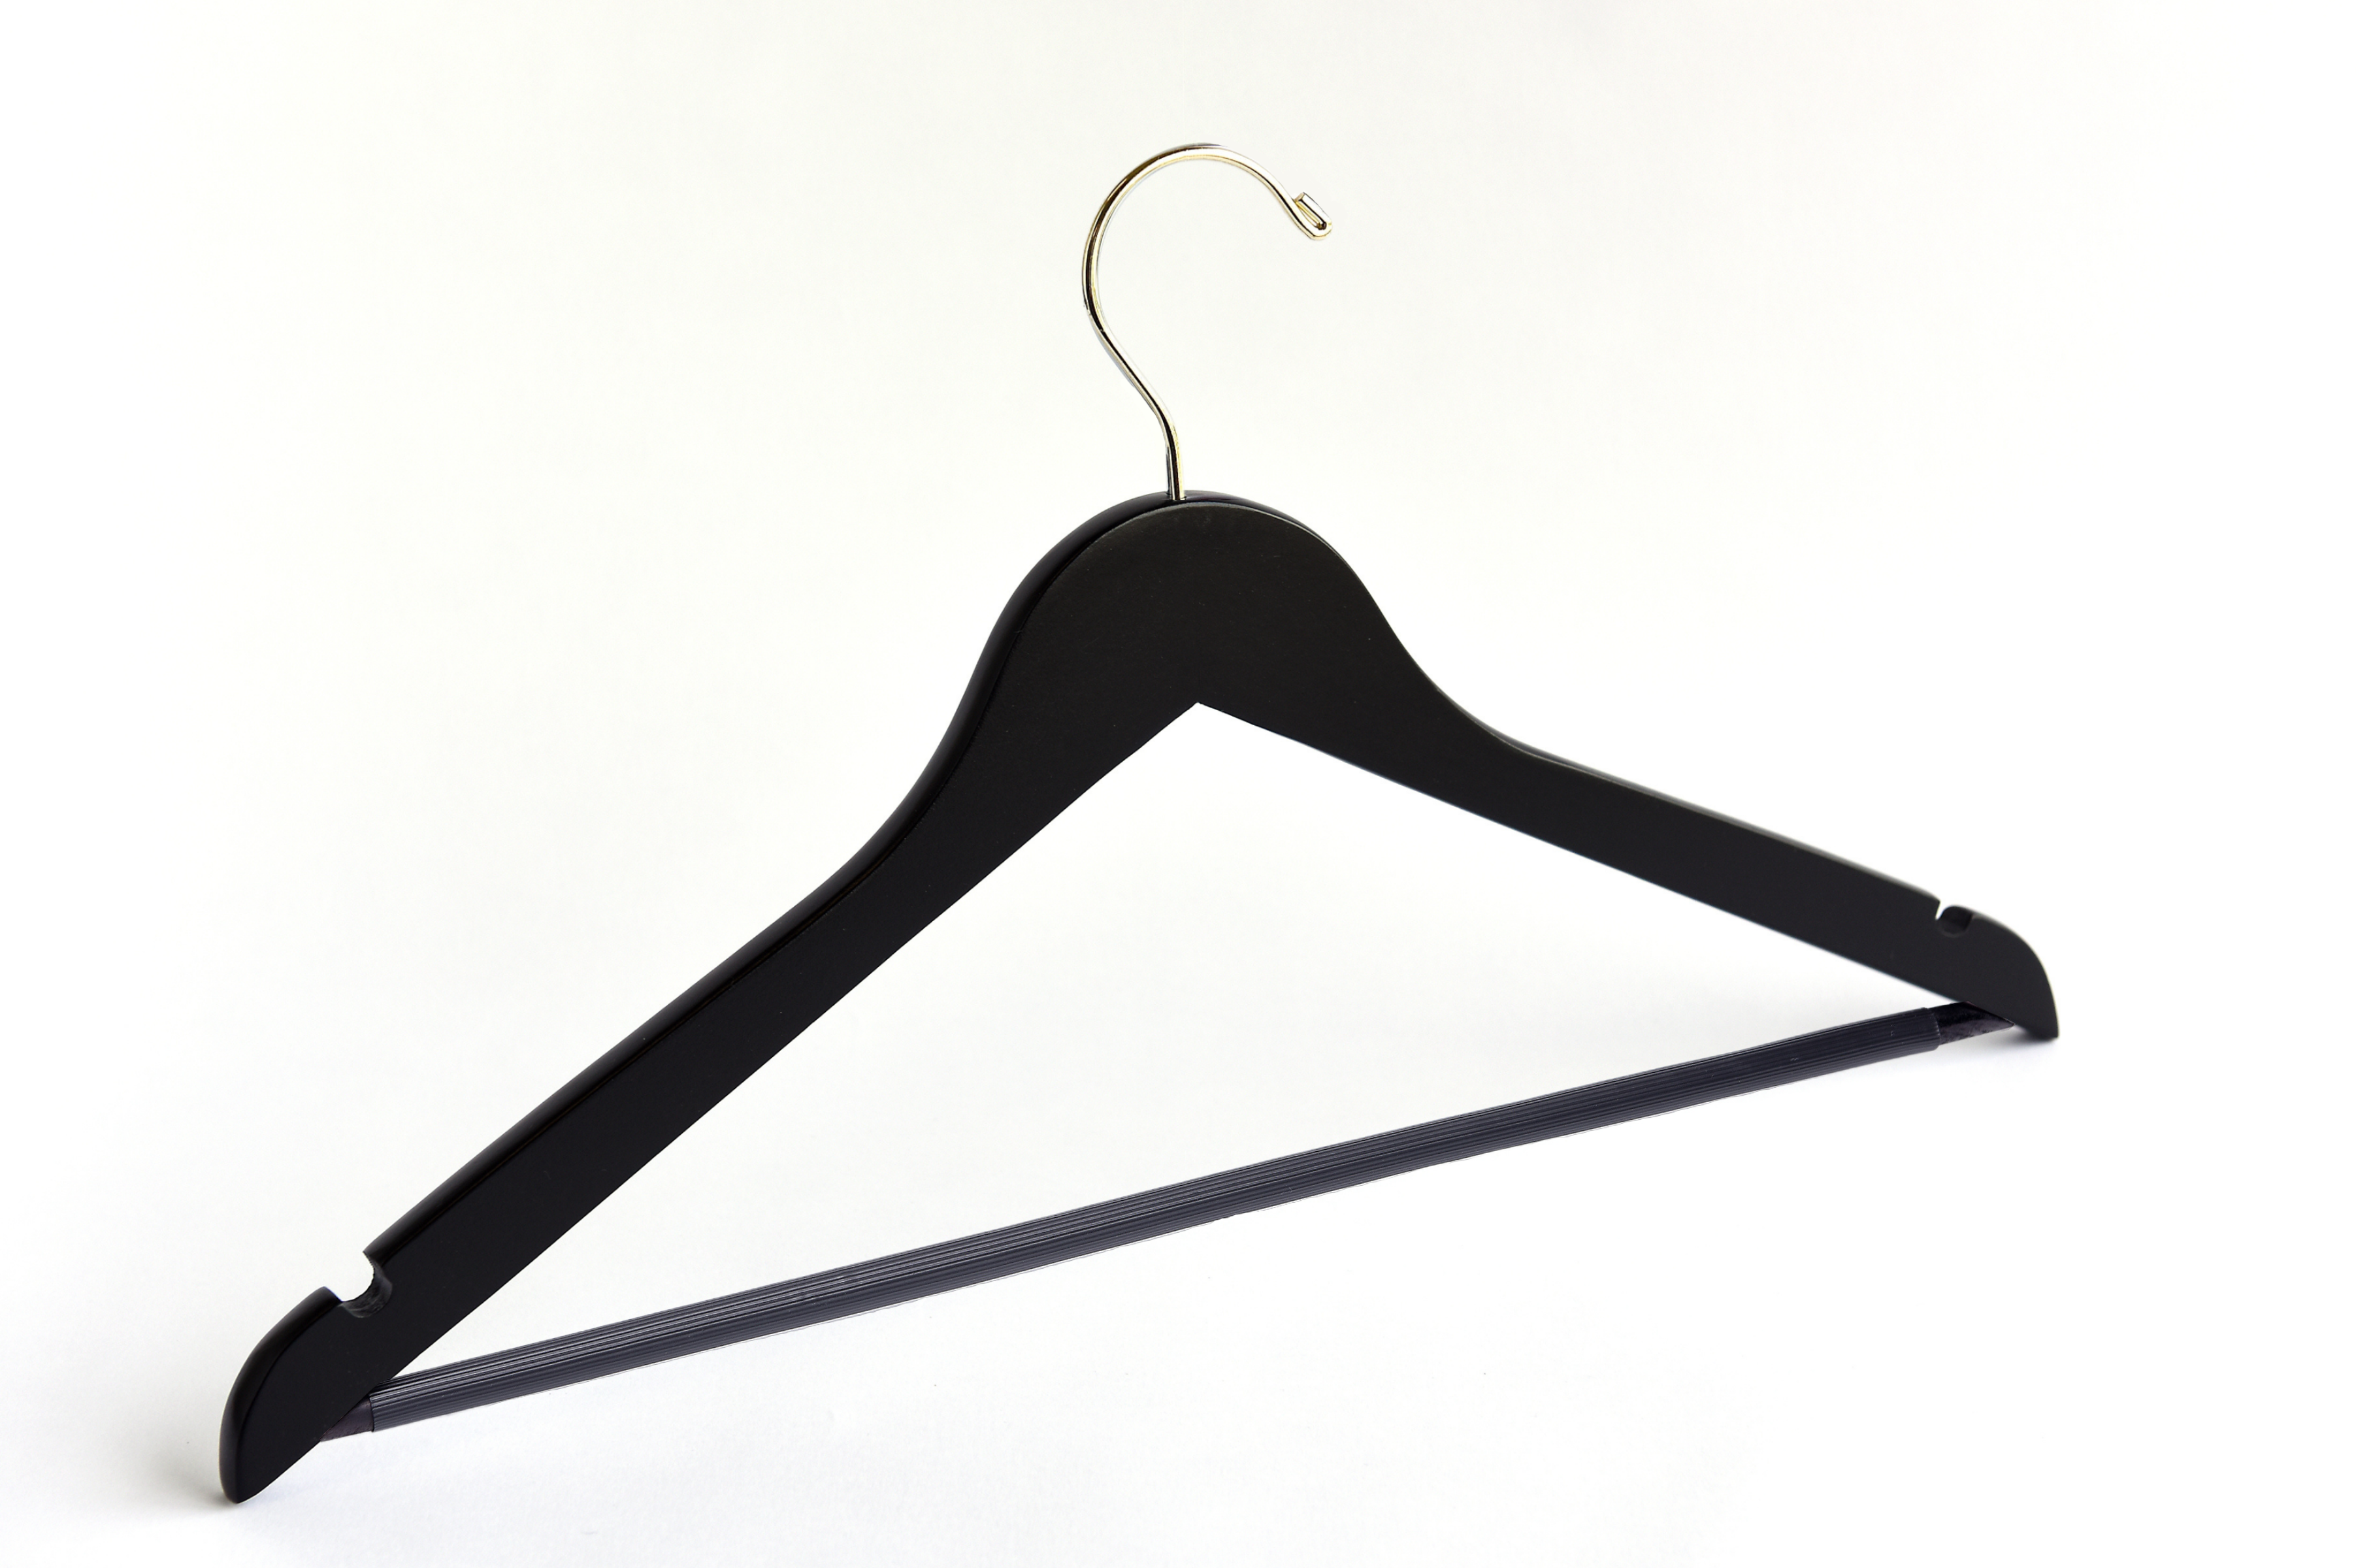 Matte Black Wooden Flat Suit Hanger with a gold hook, shoulder notches, and pant bar for custom bridal hanger designers #hook-color_gold-hook